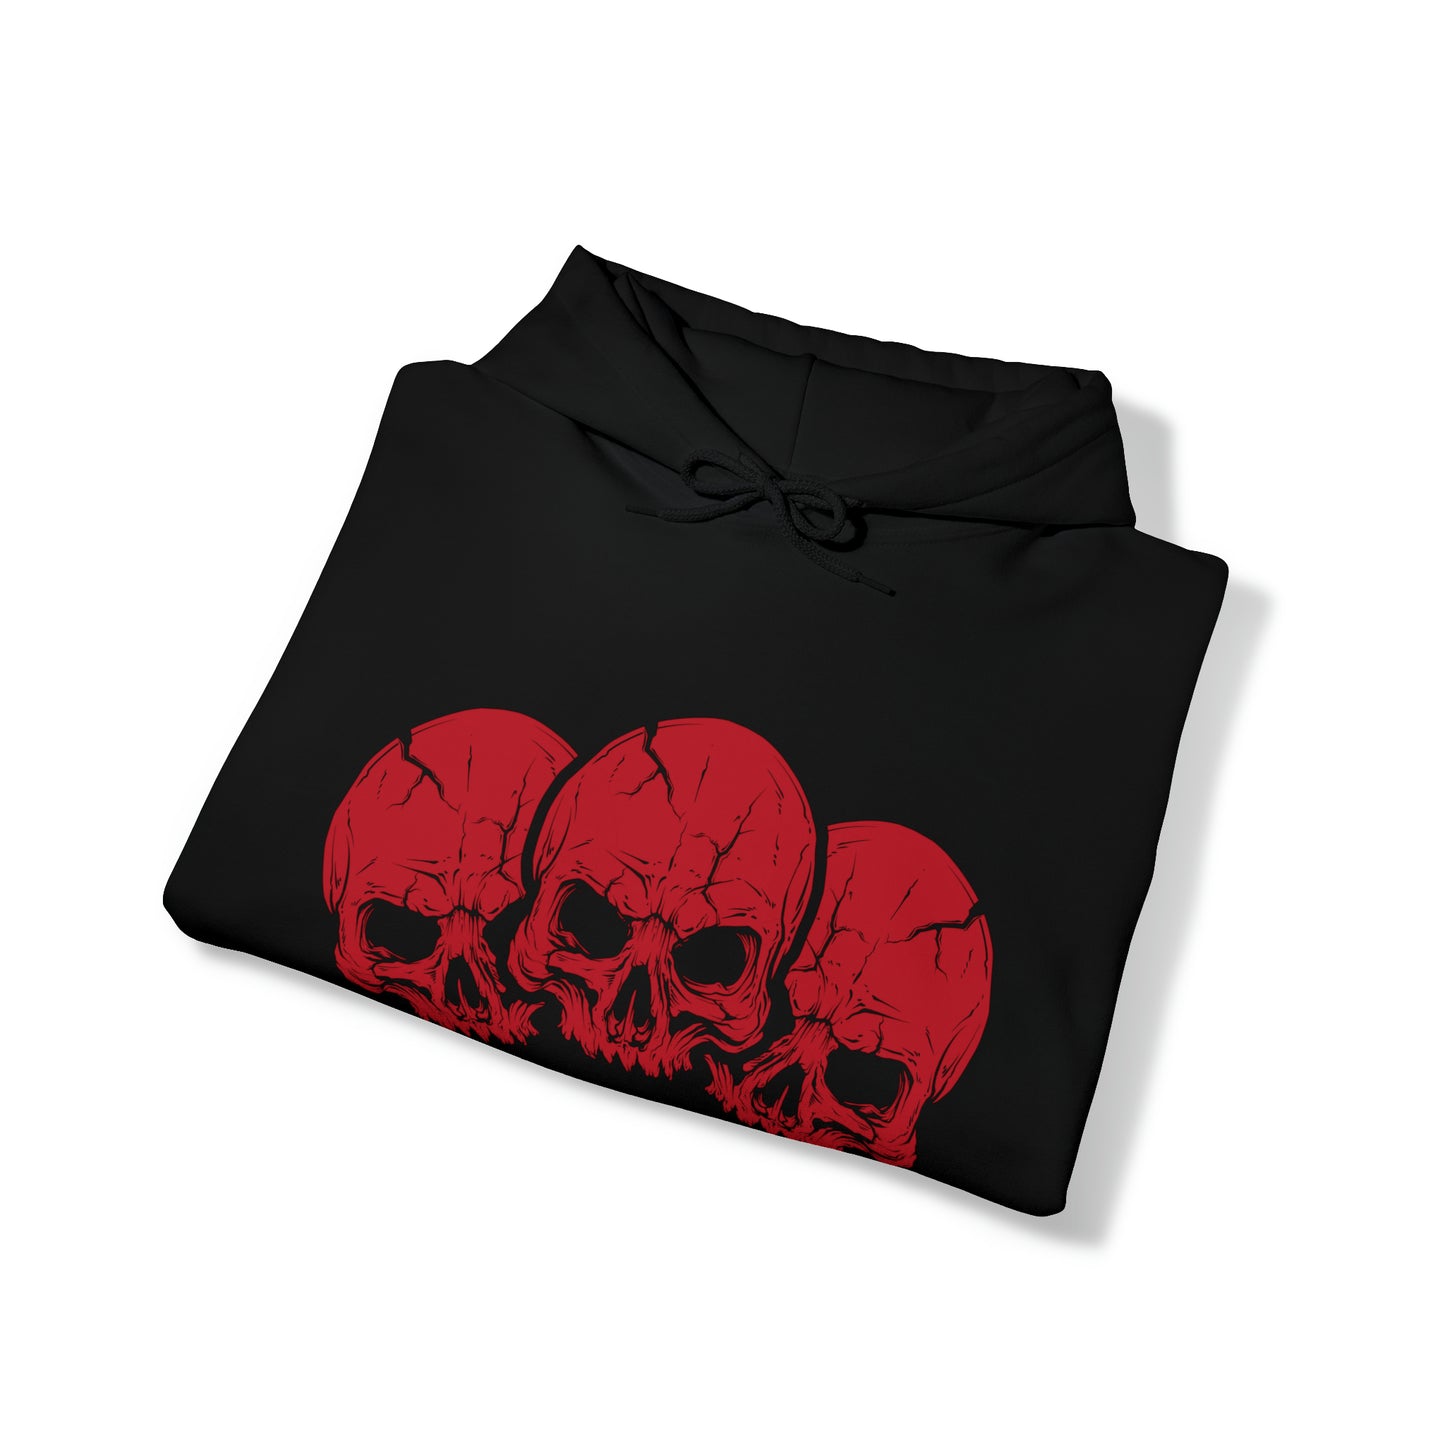 Red Skull Hooded Sweatshirt Skulls Hoodie